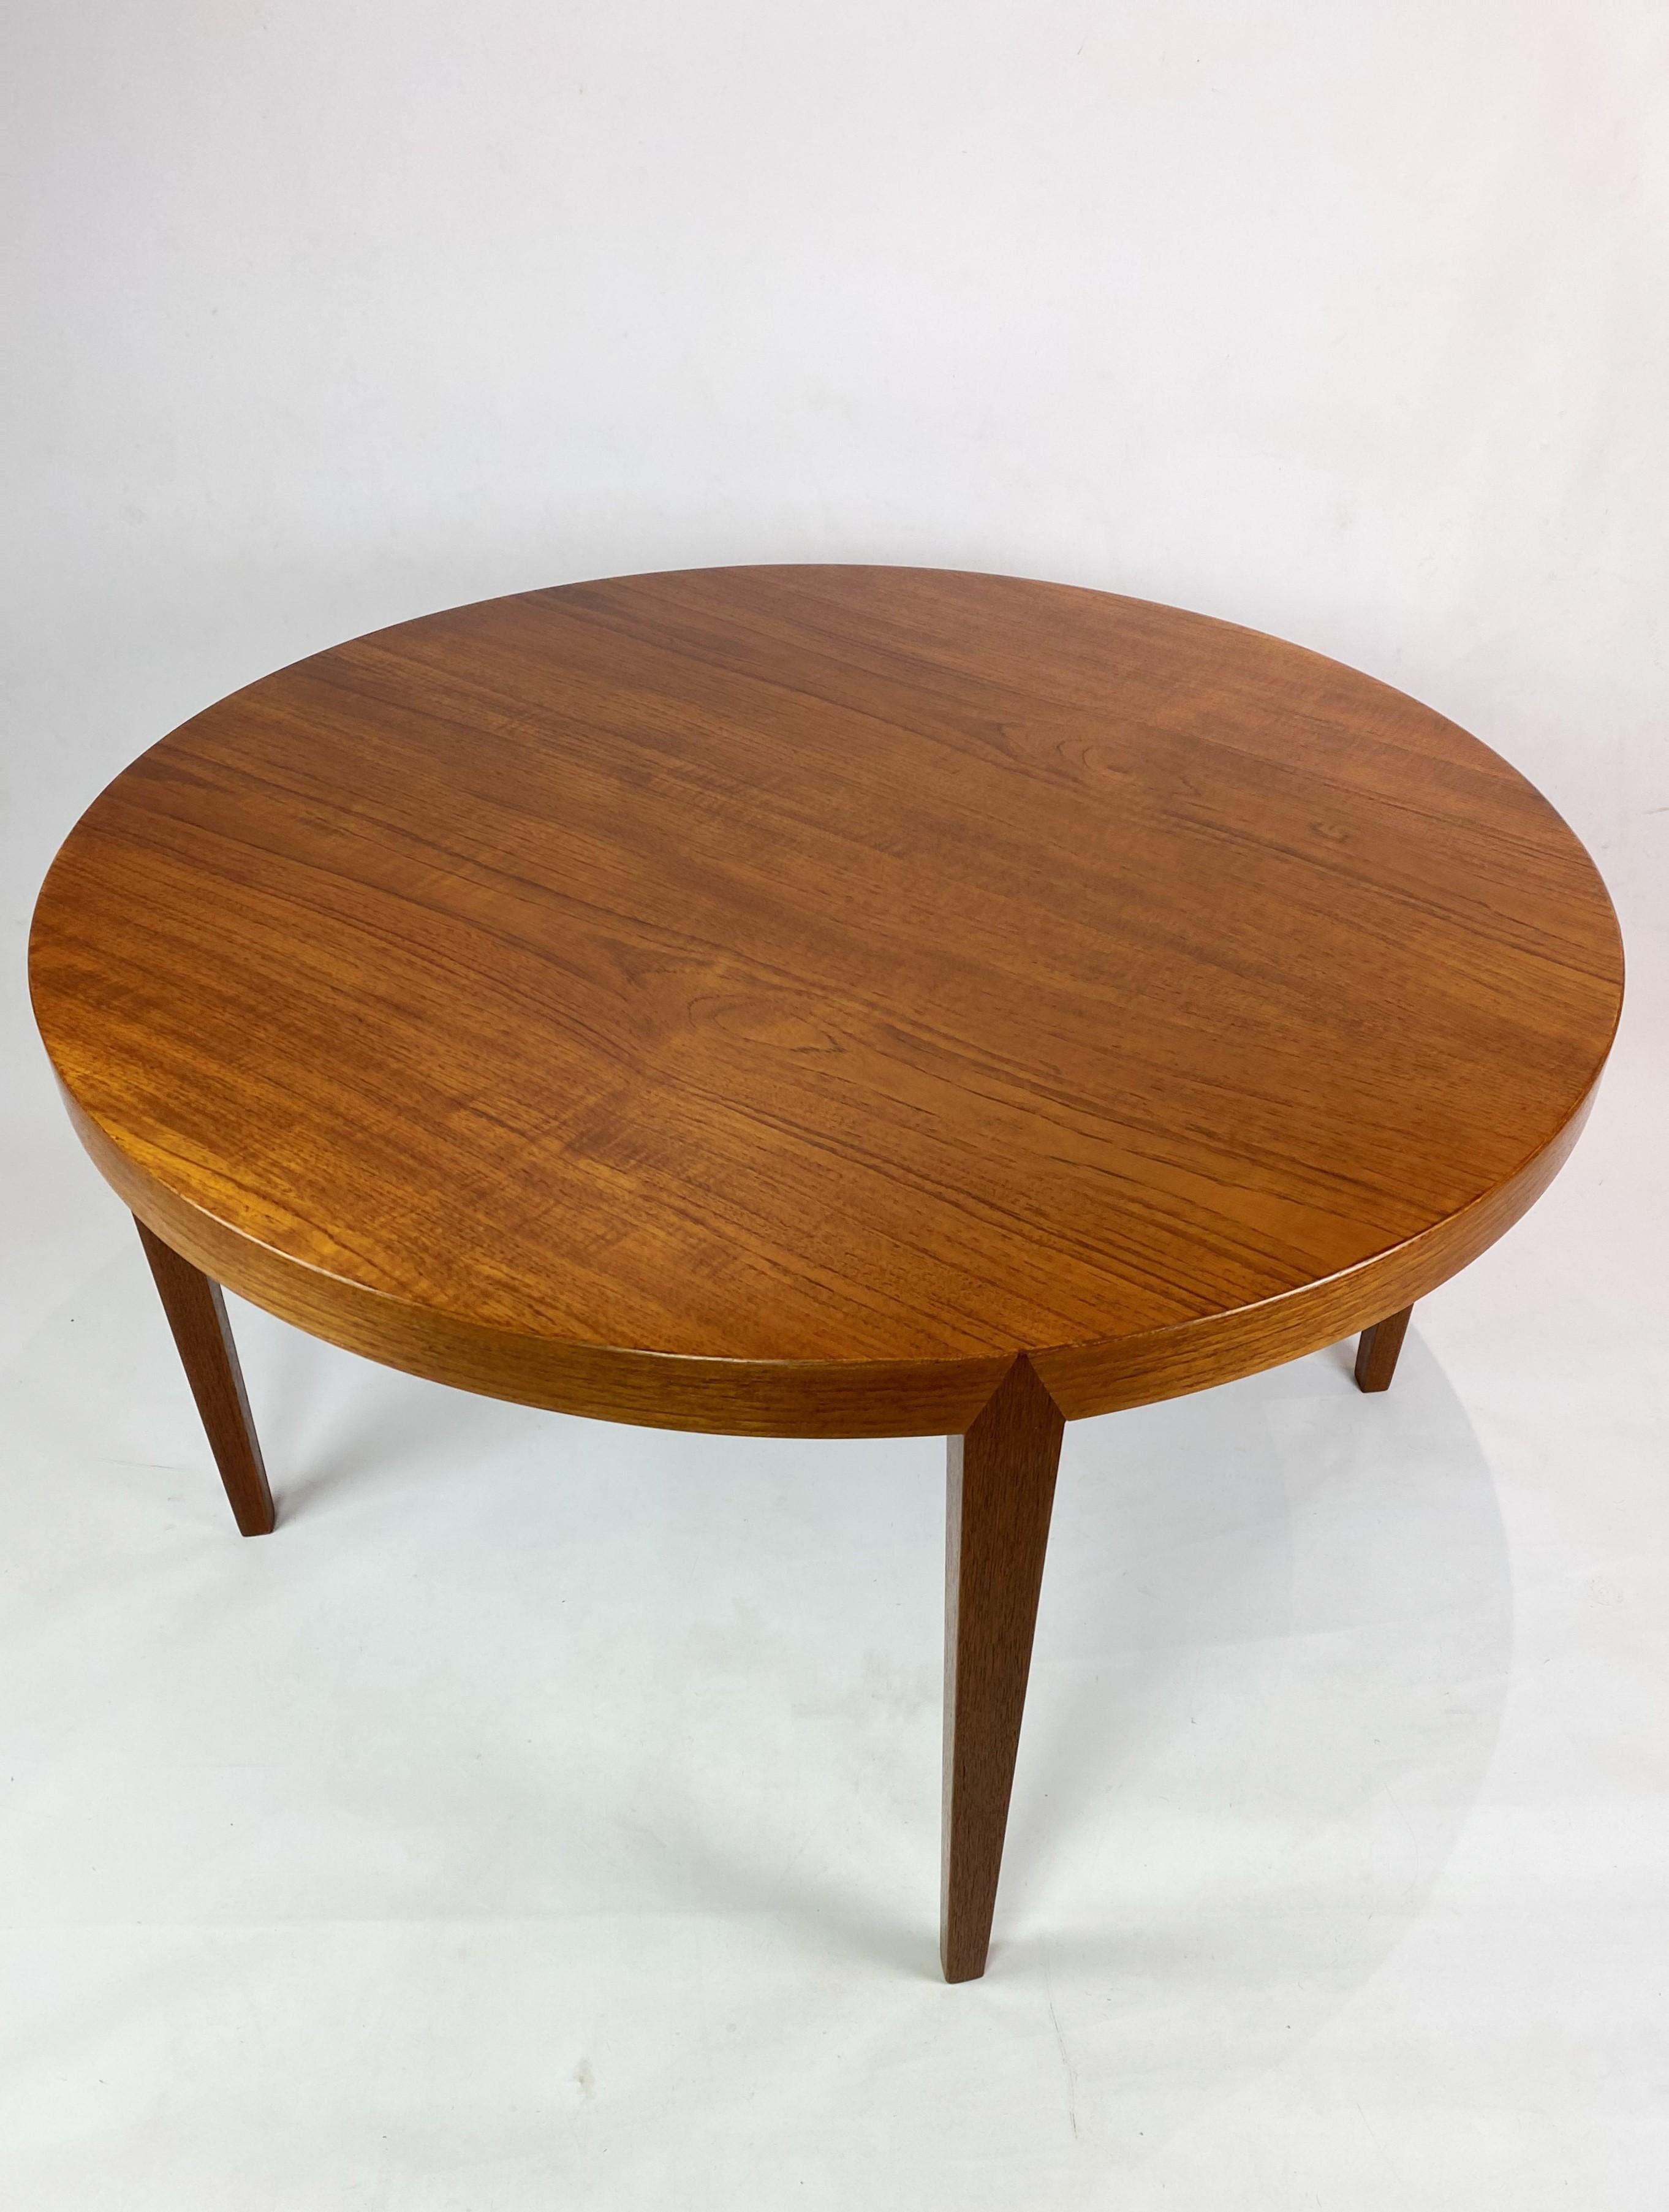 La table basse, fabriquée en teck, conçue par Severin Hansen et fabriquée par Haslev Furniture dans les années 1960, est un exemple typique du design danois du milieu du siècle.

Façonnée en teck, un bois apprécié pour ses teintes chaudes et sa